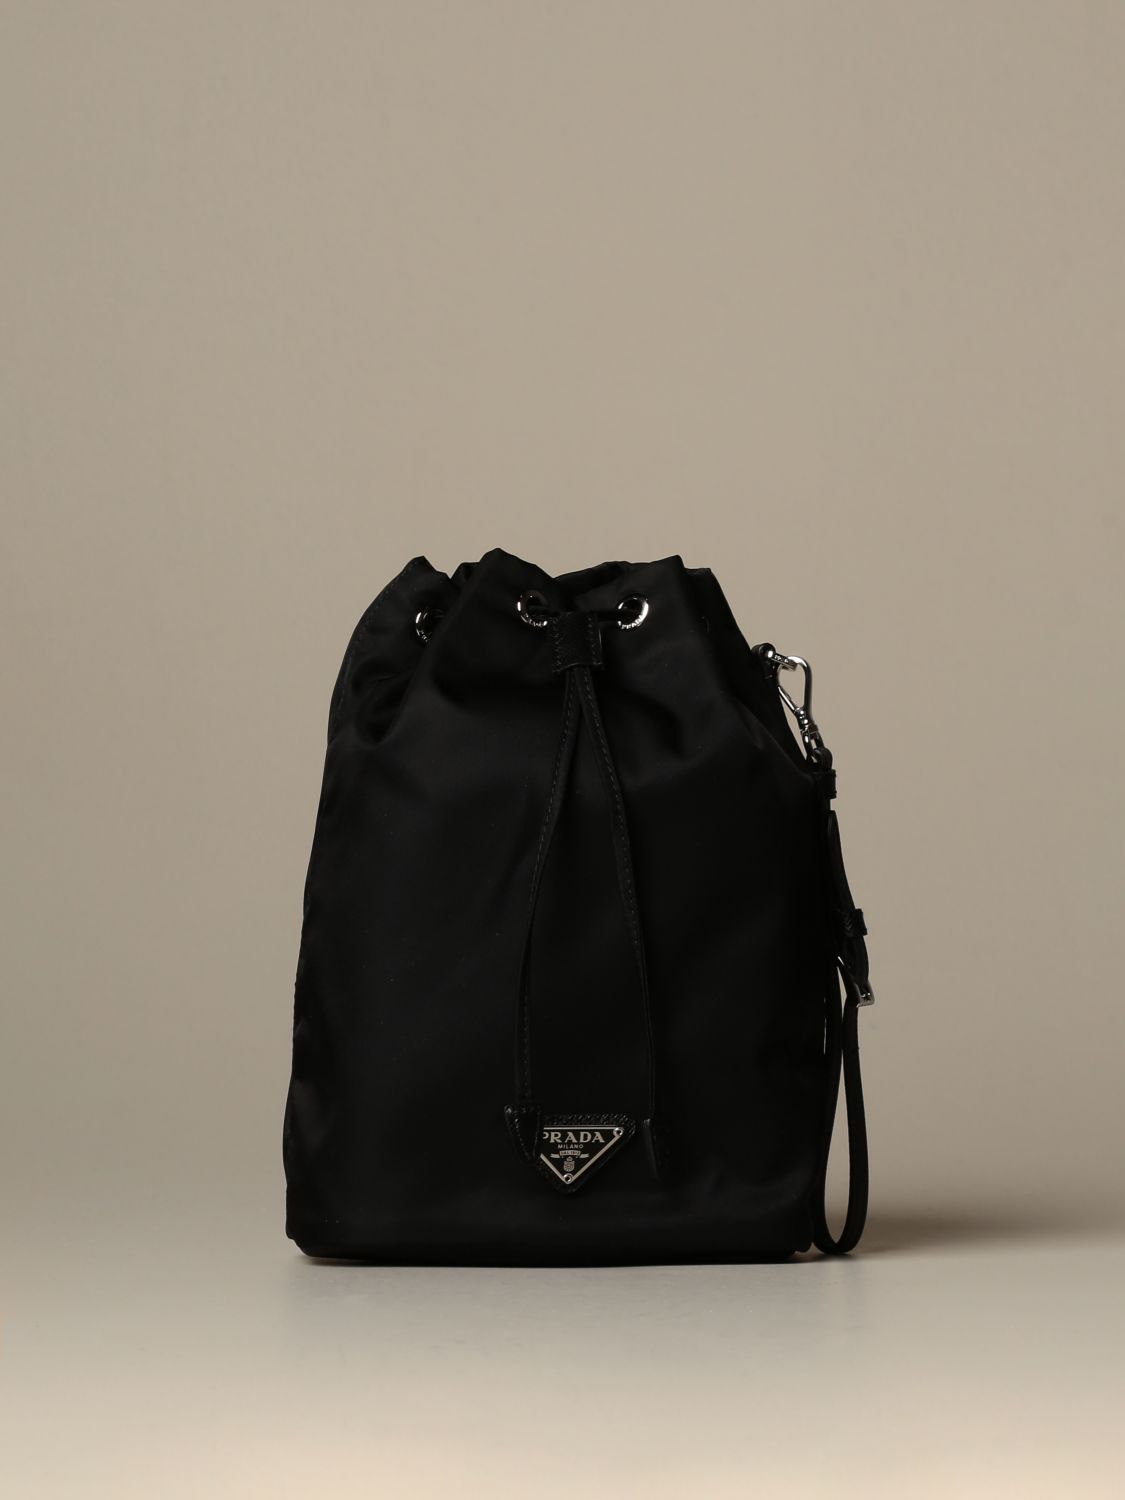 PRADA: Vela bucket bag in nylon and leather - Black | Prada mini bag ...